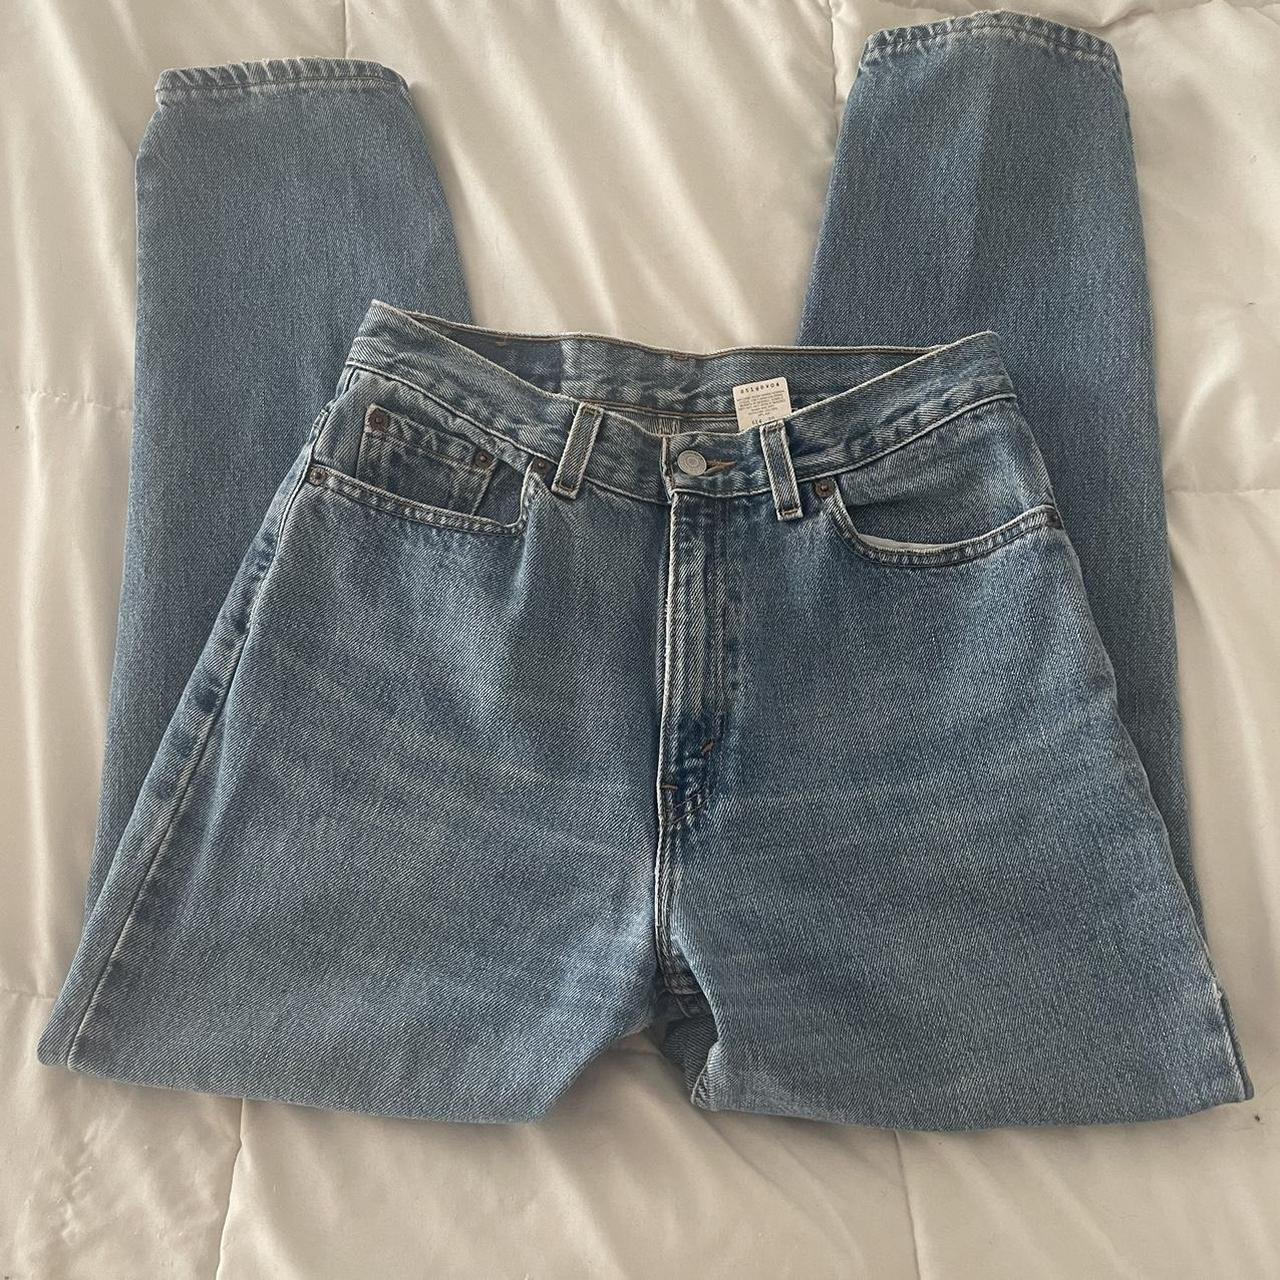 Vintage Levi’s 512 100% cotton denim jeans // medium... - Depop